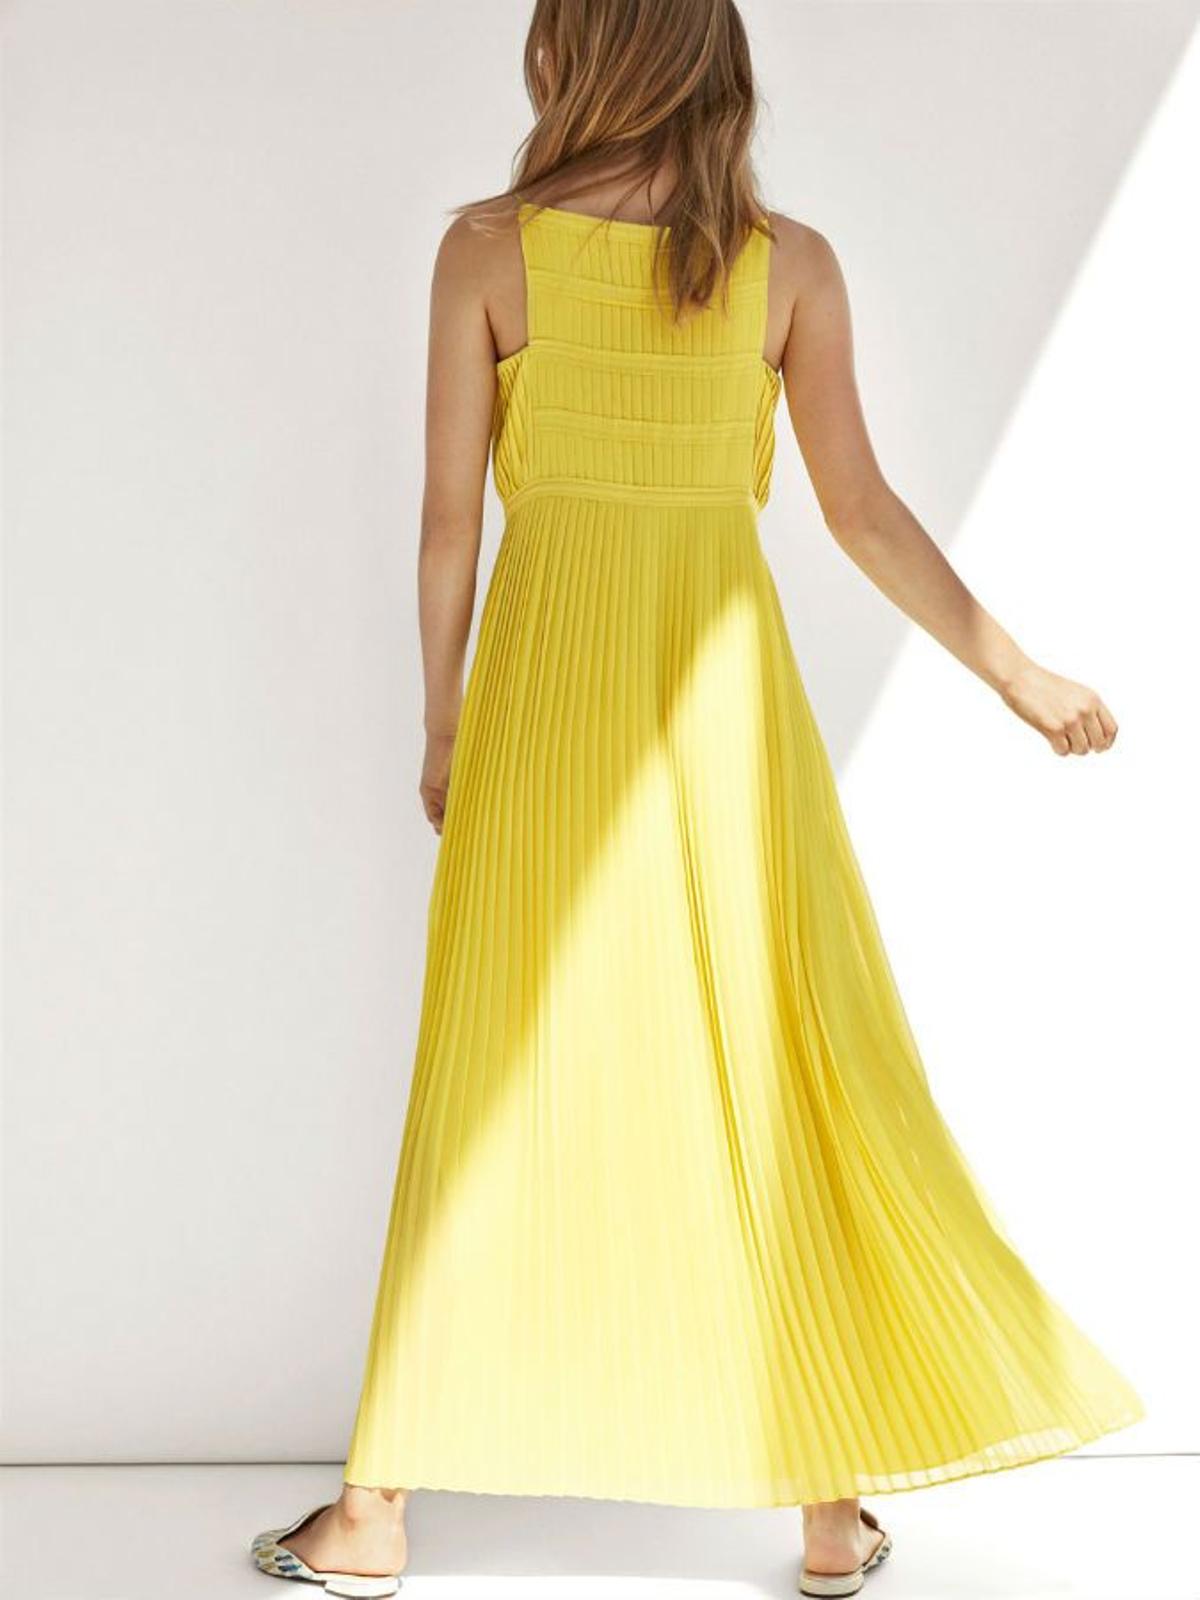 Prendas y complementos en amarillo: vestido de Massimo Dutti